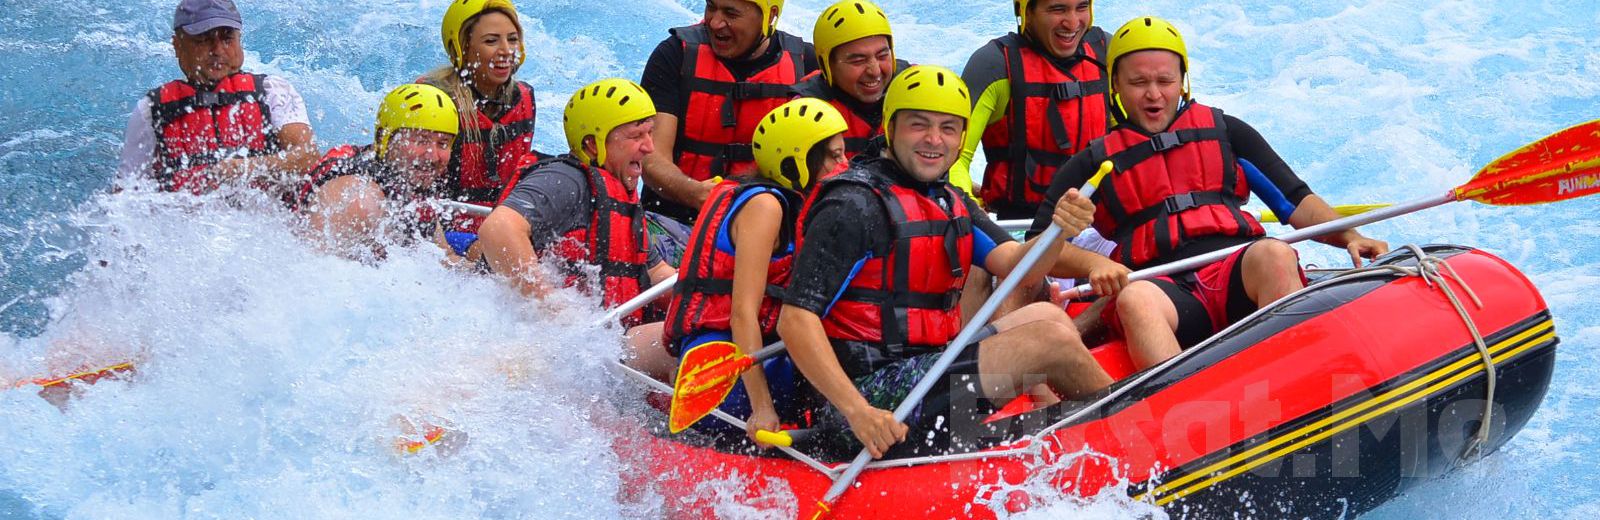 Adrenalin Tutkunlarına Manavgat Mavi Rafting Köprülü Kanyon’da Öğle Yemeği Dahil Rafting Macerası